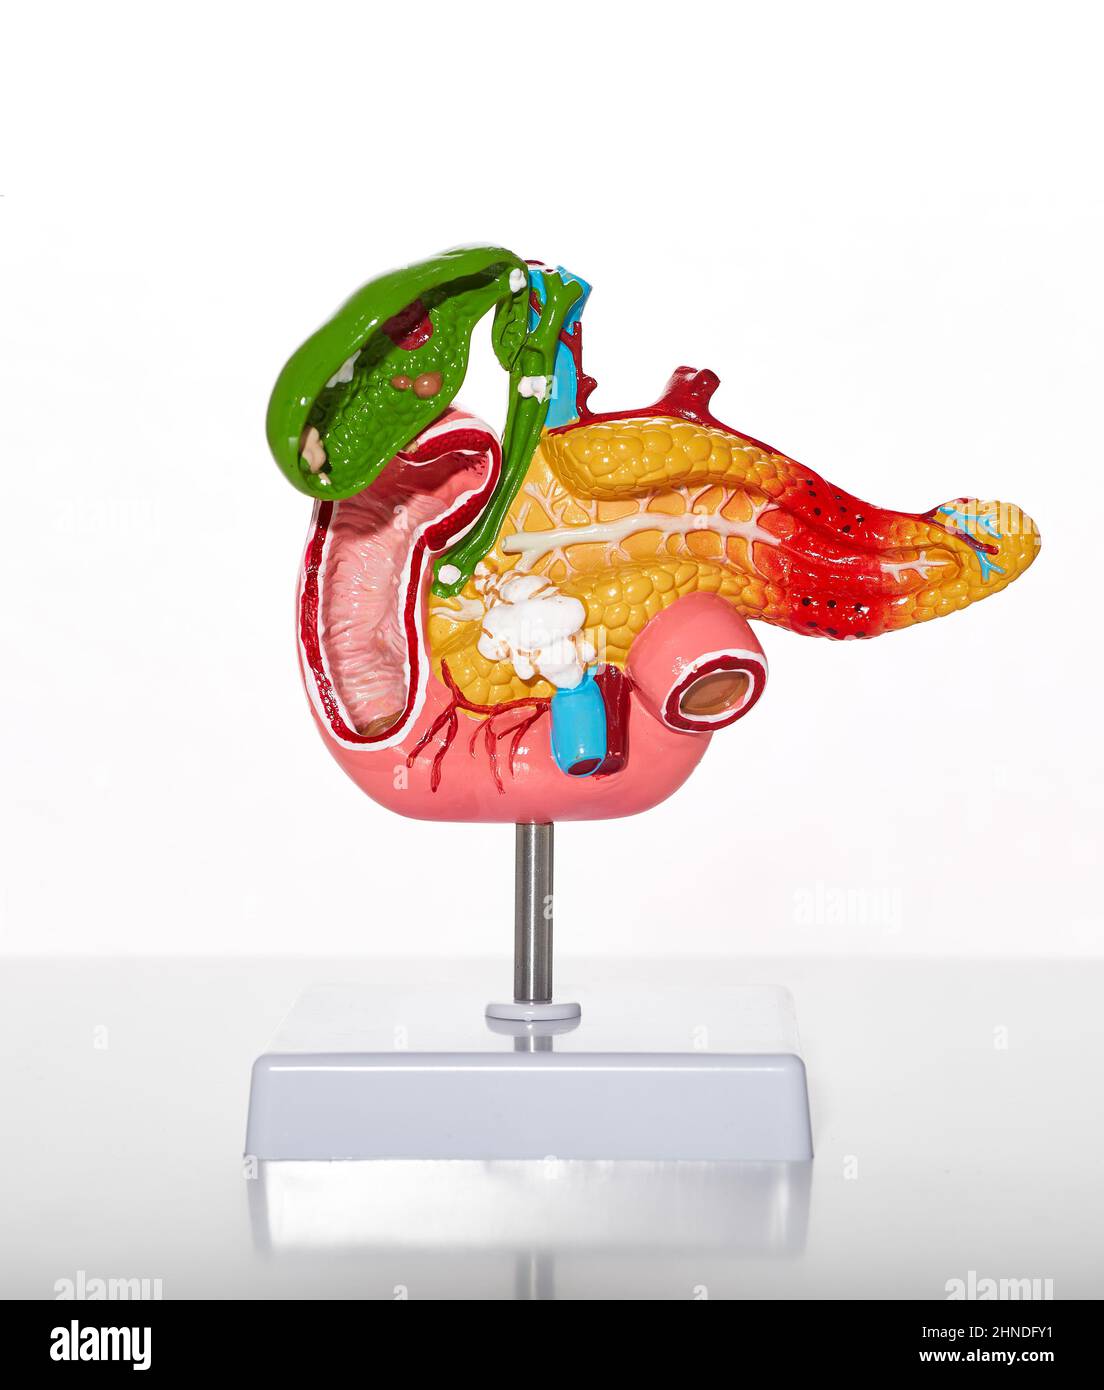 Modello anatomico del pancreas umano e della cistifellea con patologie e malattie per l'educazione medica e biologica, primo piano Foto Stock